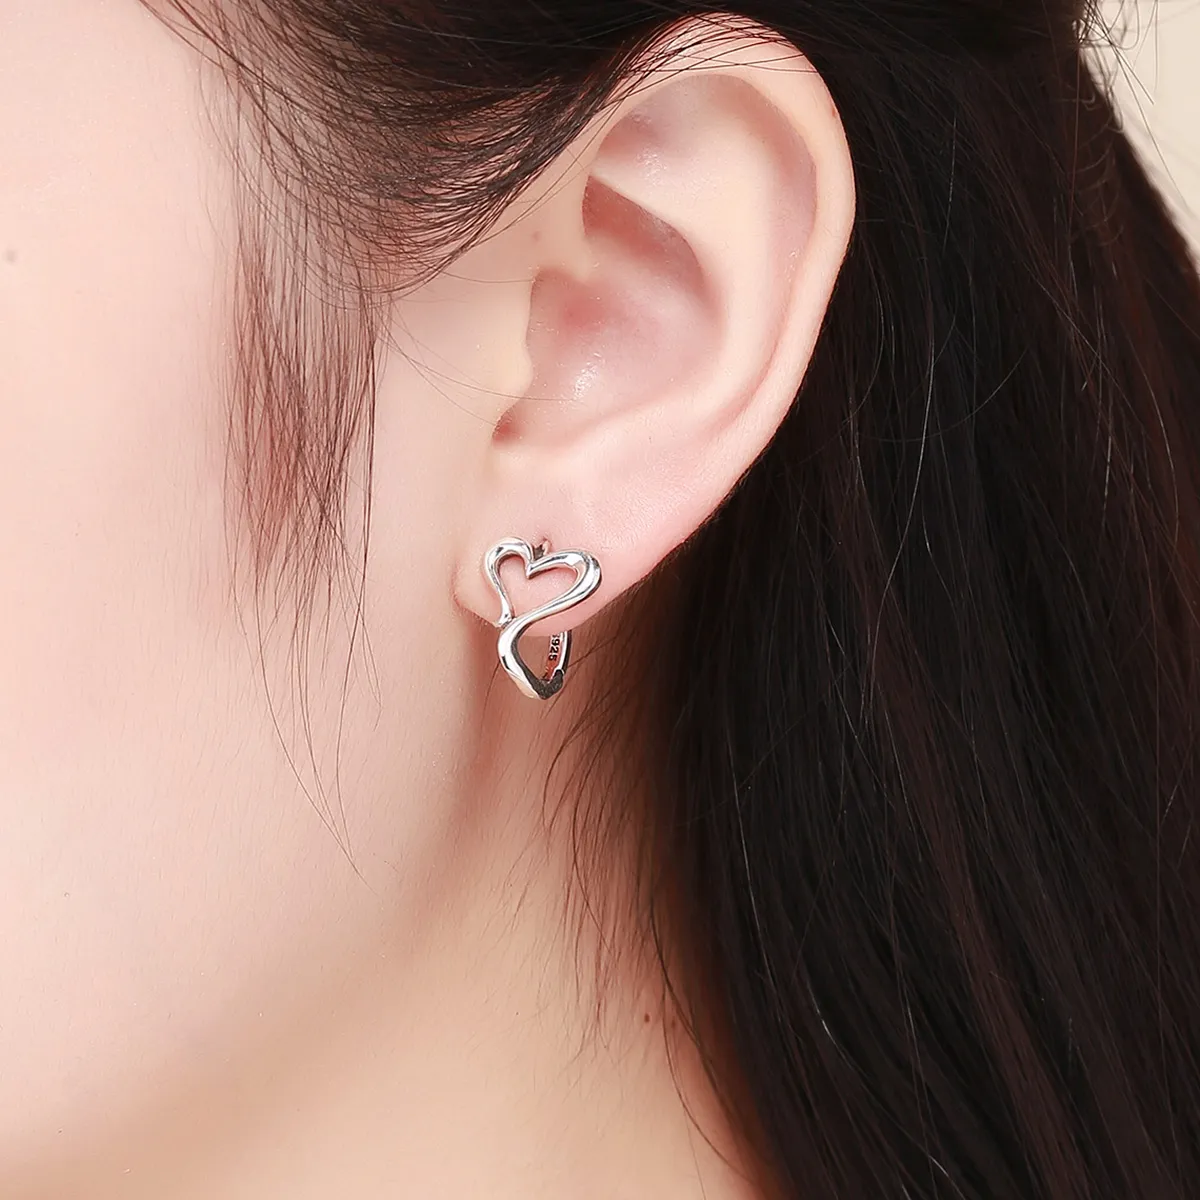 Pandora Style Silver Love Shape Hoop Earrings - SCE447